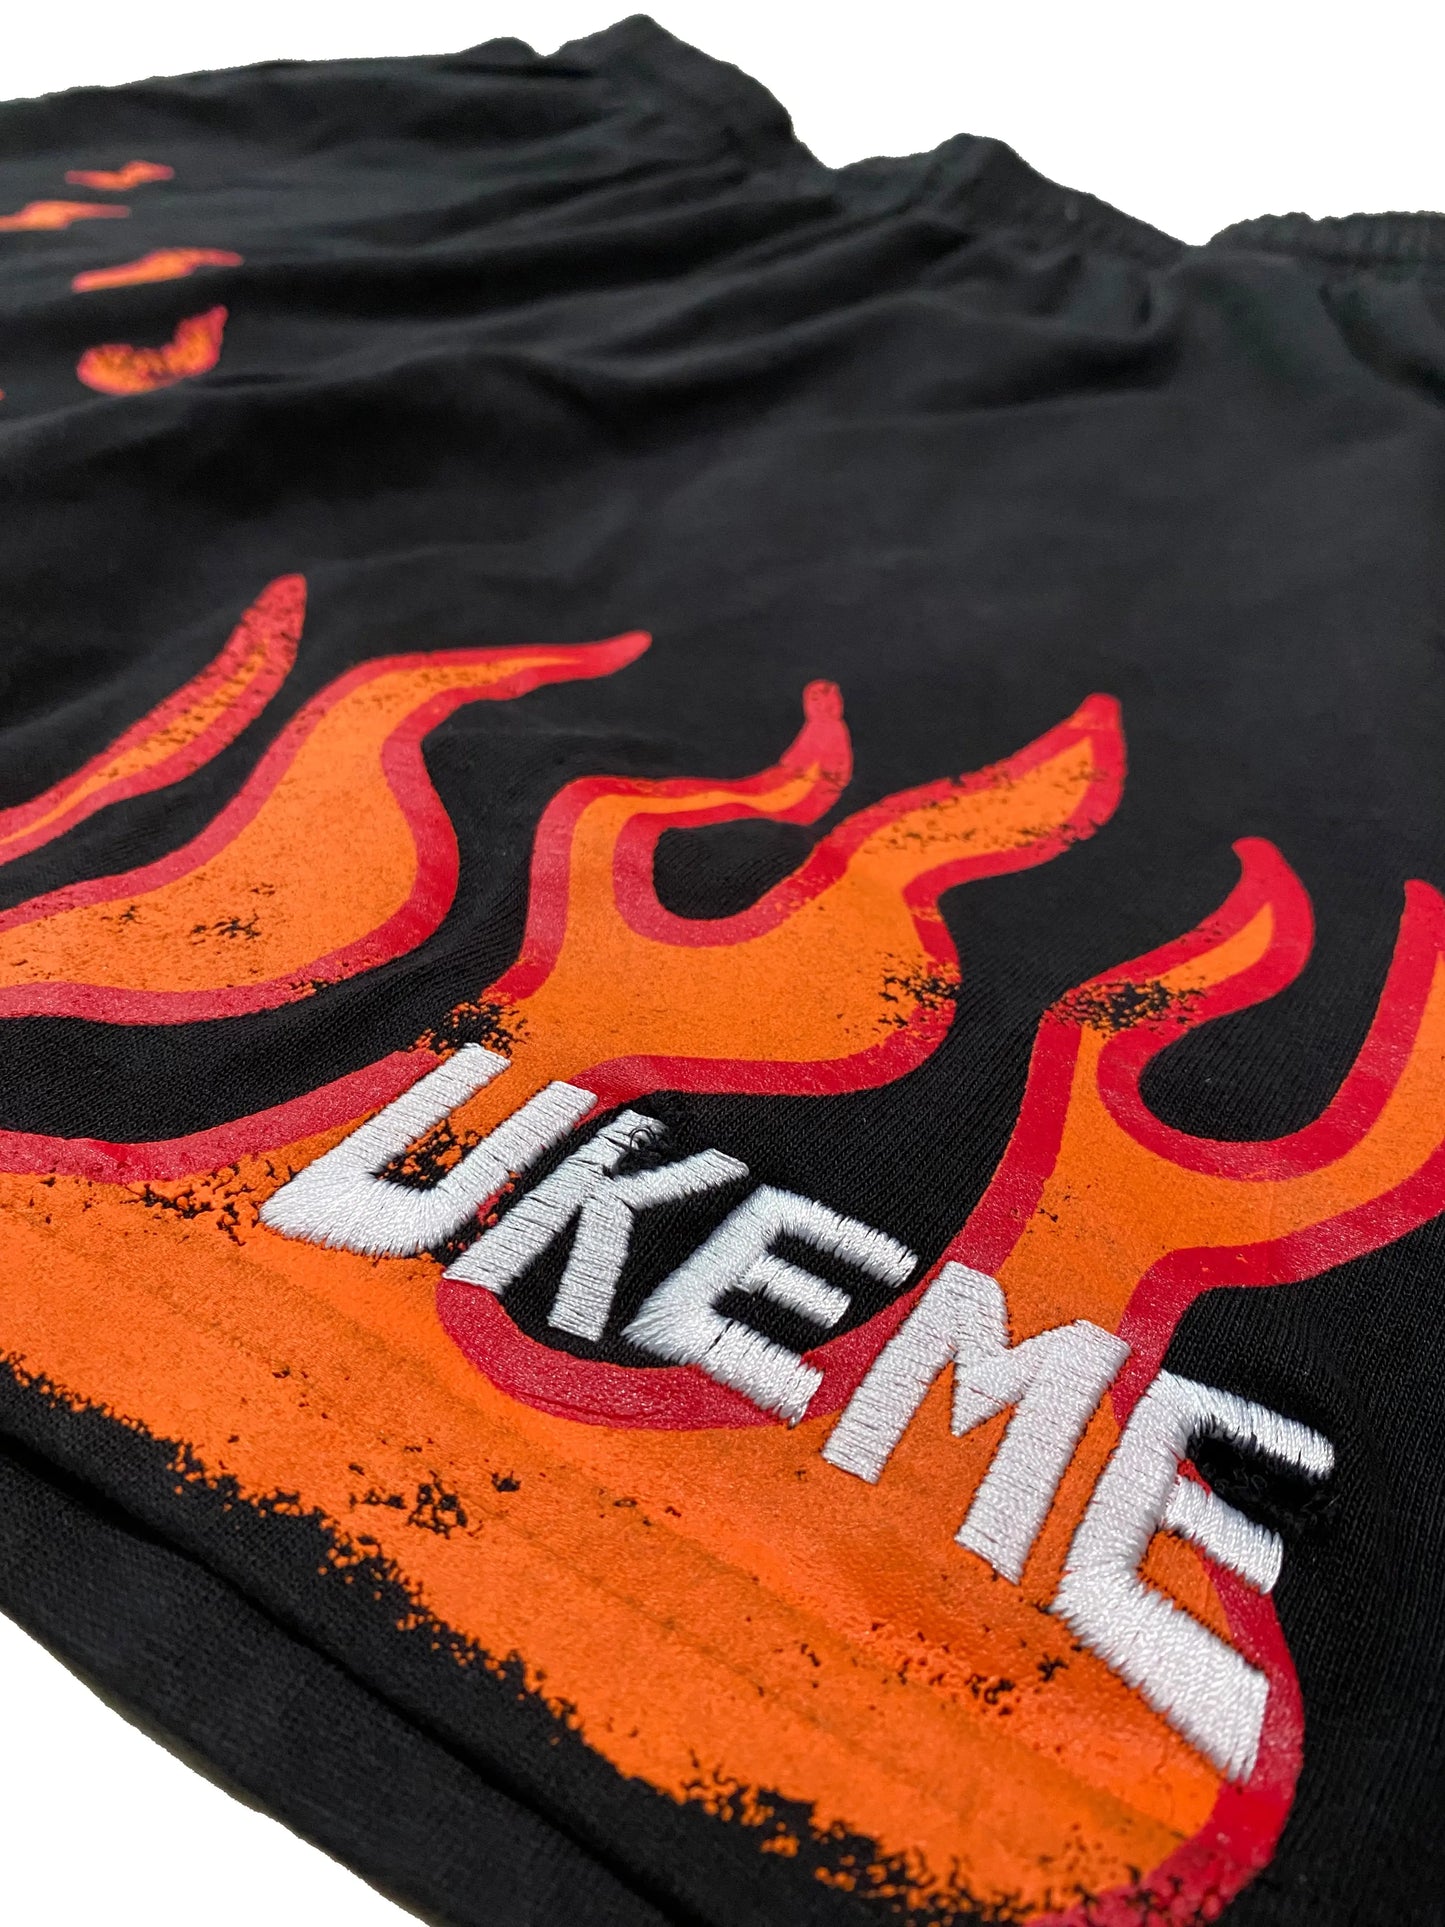 Burning Flames Shorts UKEME OFFICIAL